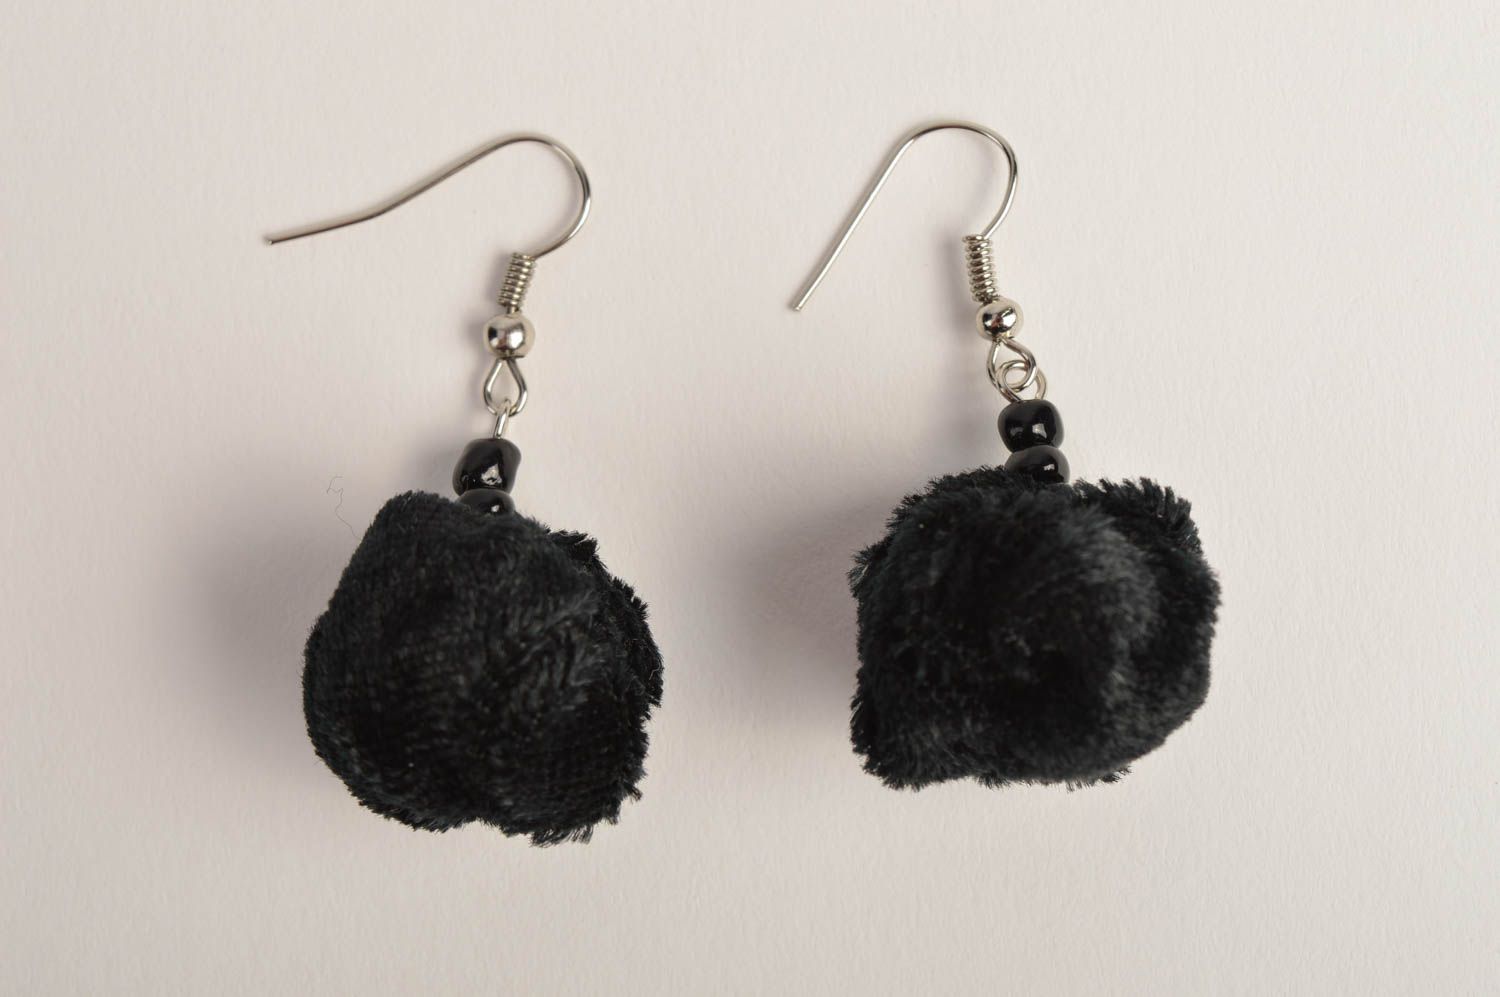 Handmade textile black earrings unusual elegant earrings designer jewelry photo 2